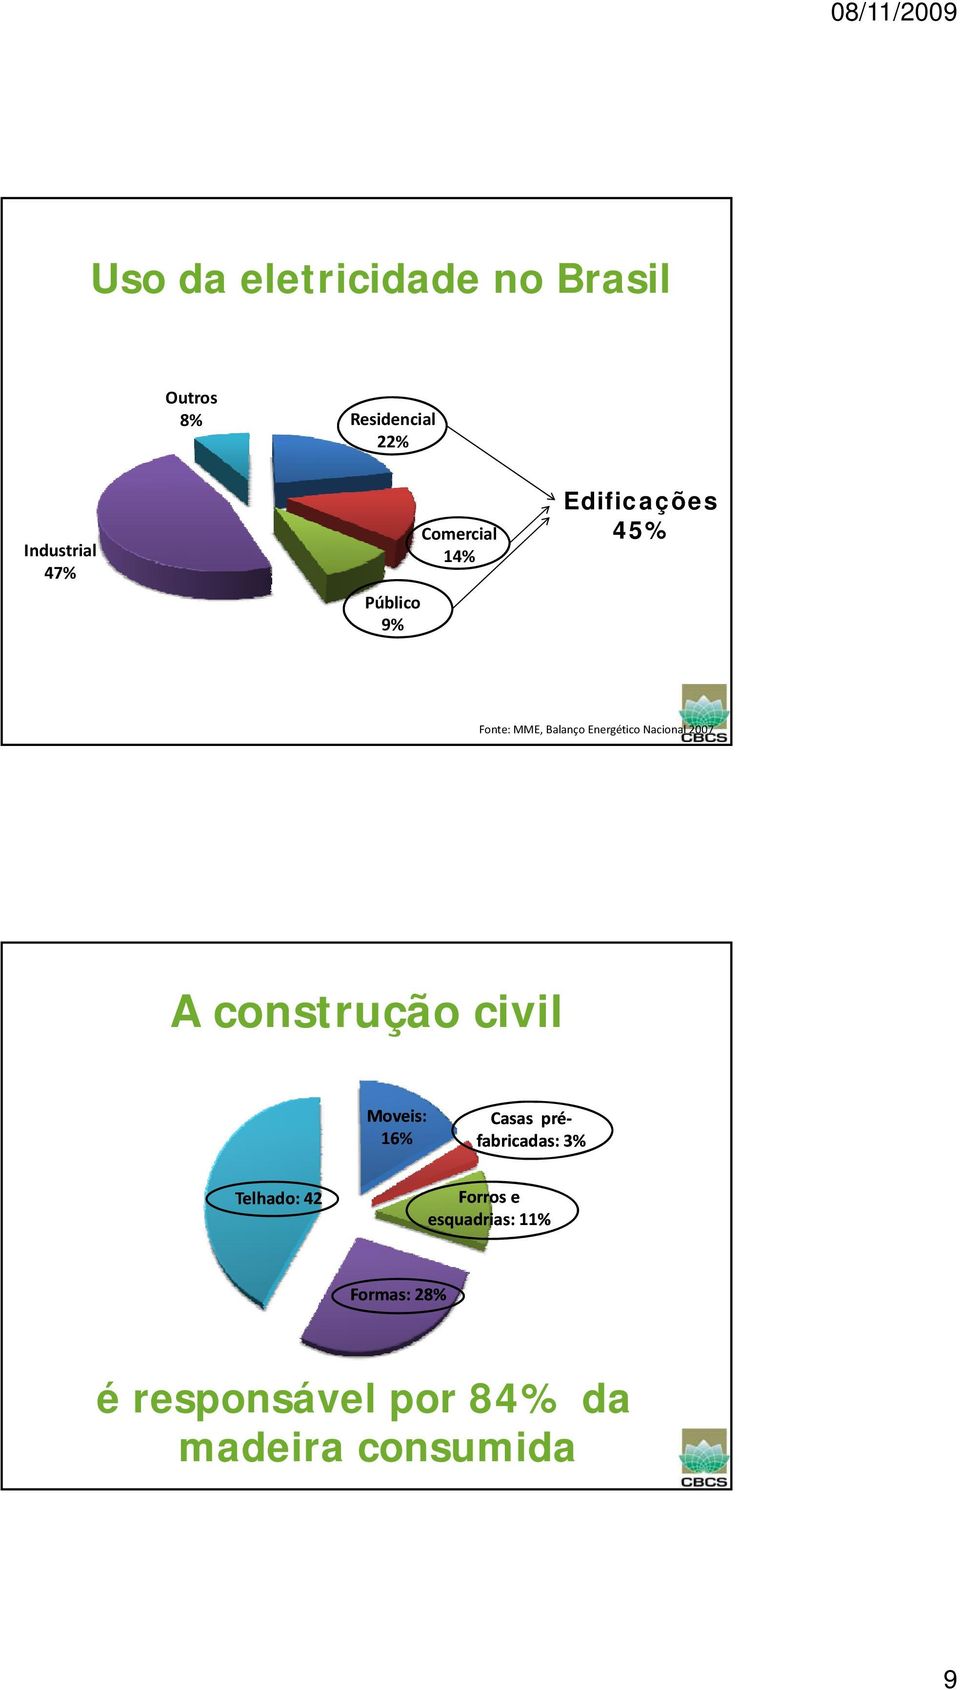 Nacional 2007 A construção civil Moveis: 16% Casas pré fabricadas: 3%